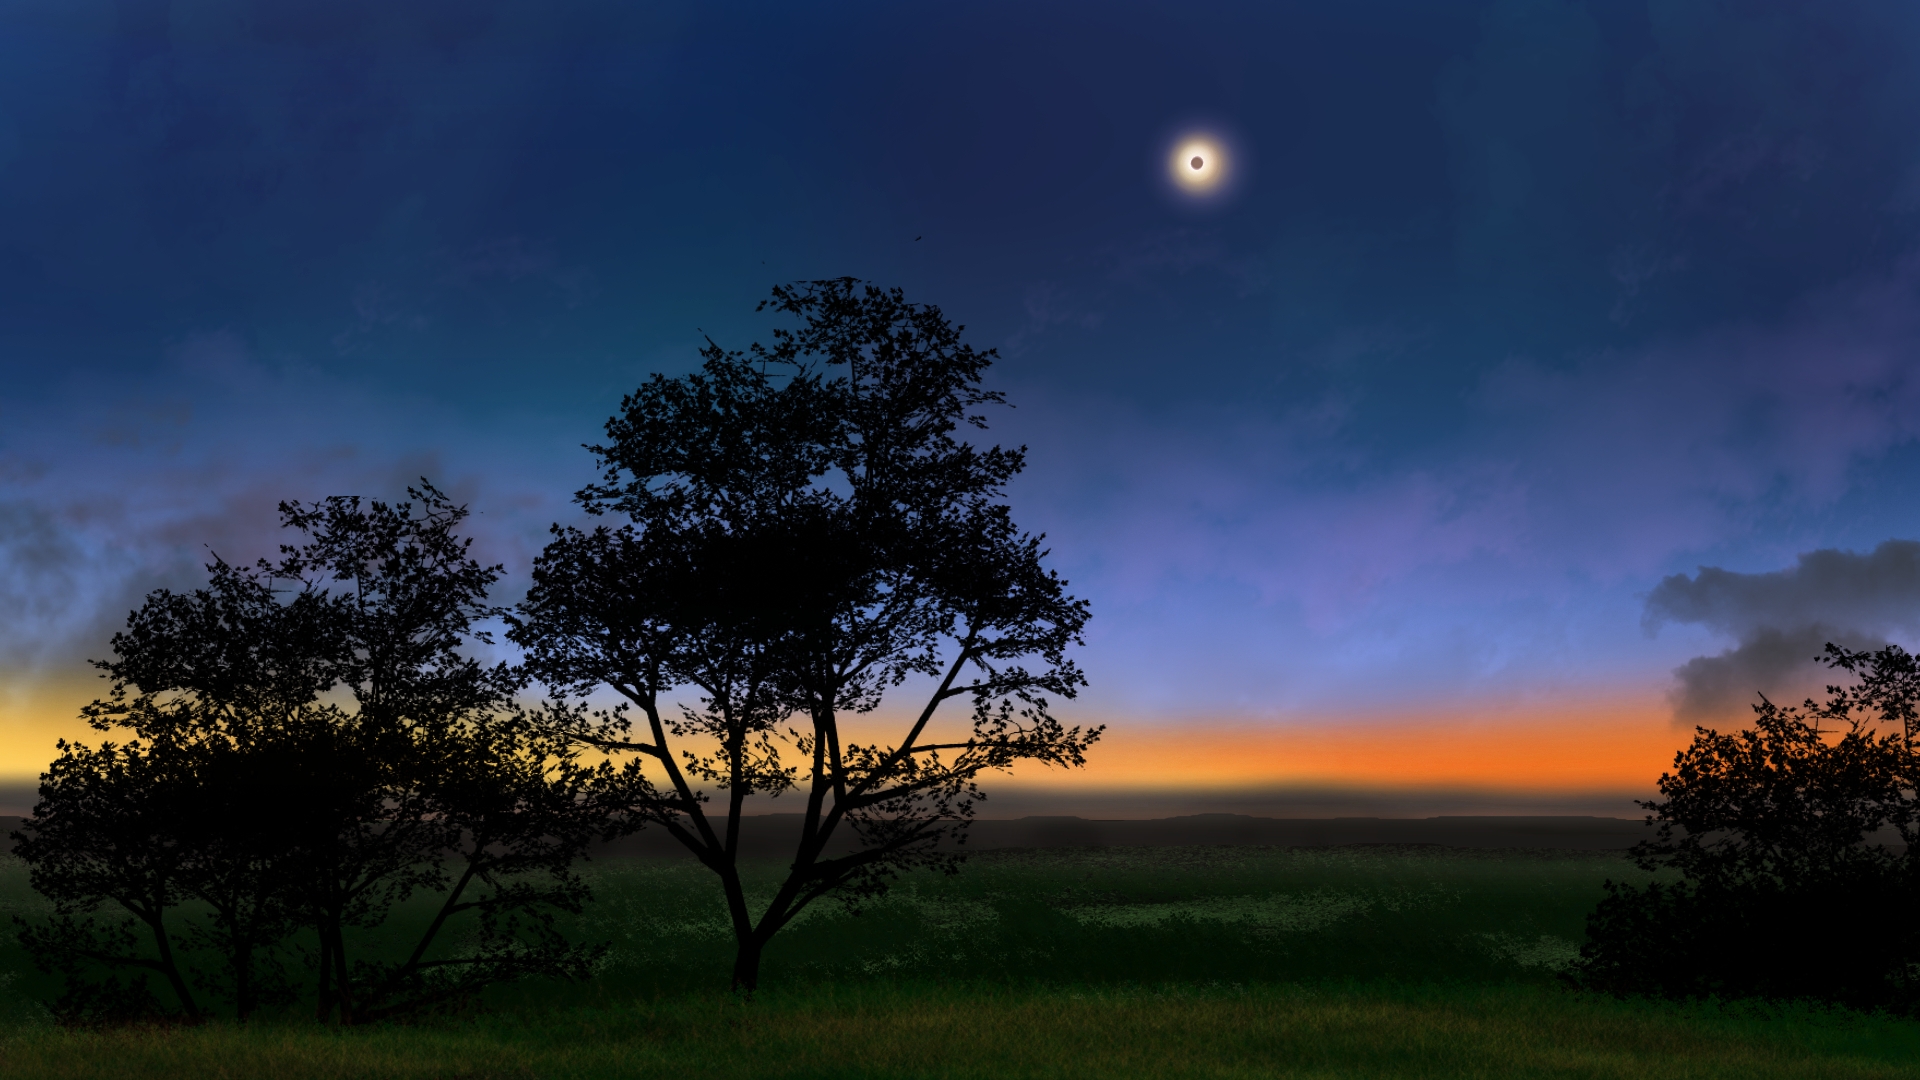 Digital Art Digital Painting Landscape Eclipse Colorful Nature 1920x1080